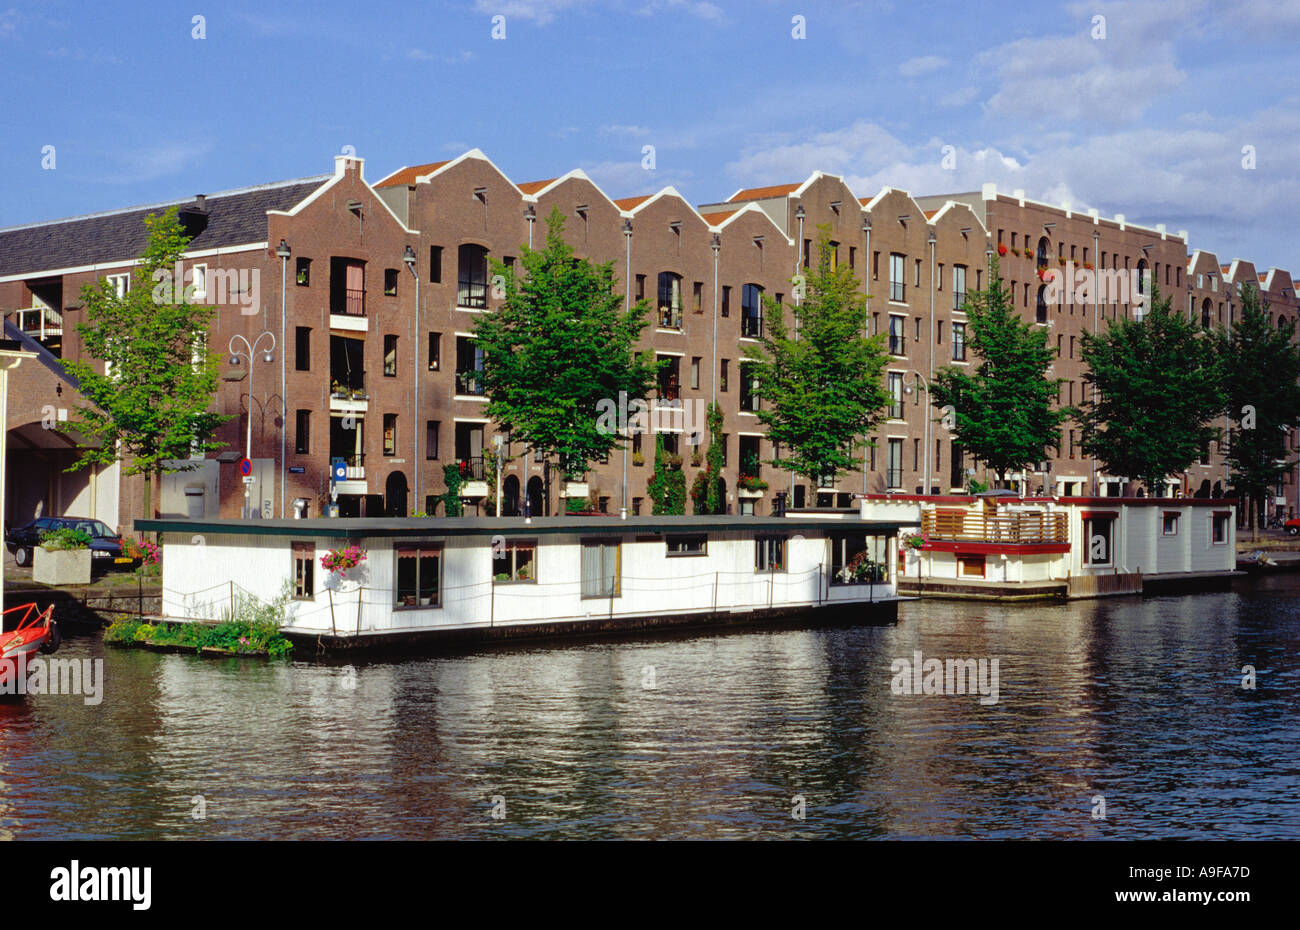 Converti les entrepôts et les péniches à Amsterdam aux Pays-Bas Banque D'Images